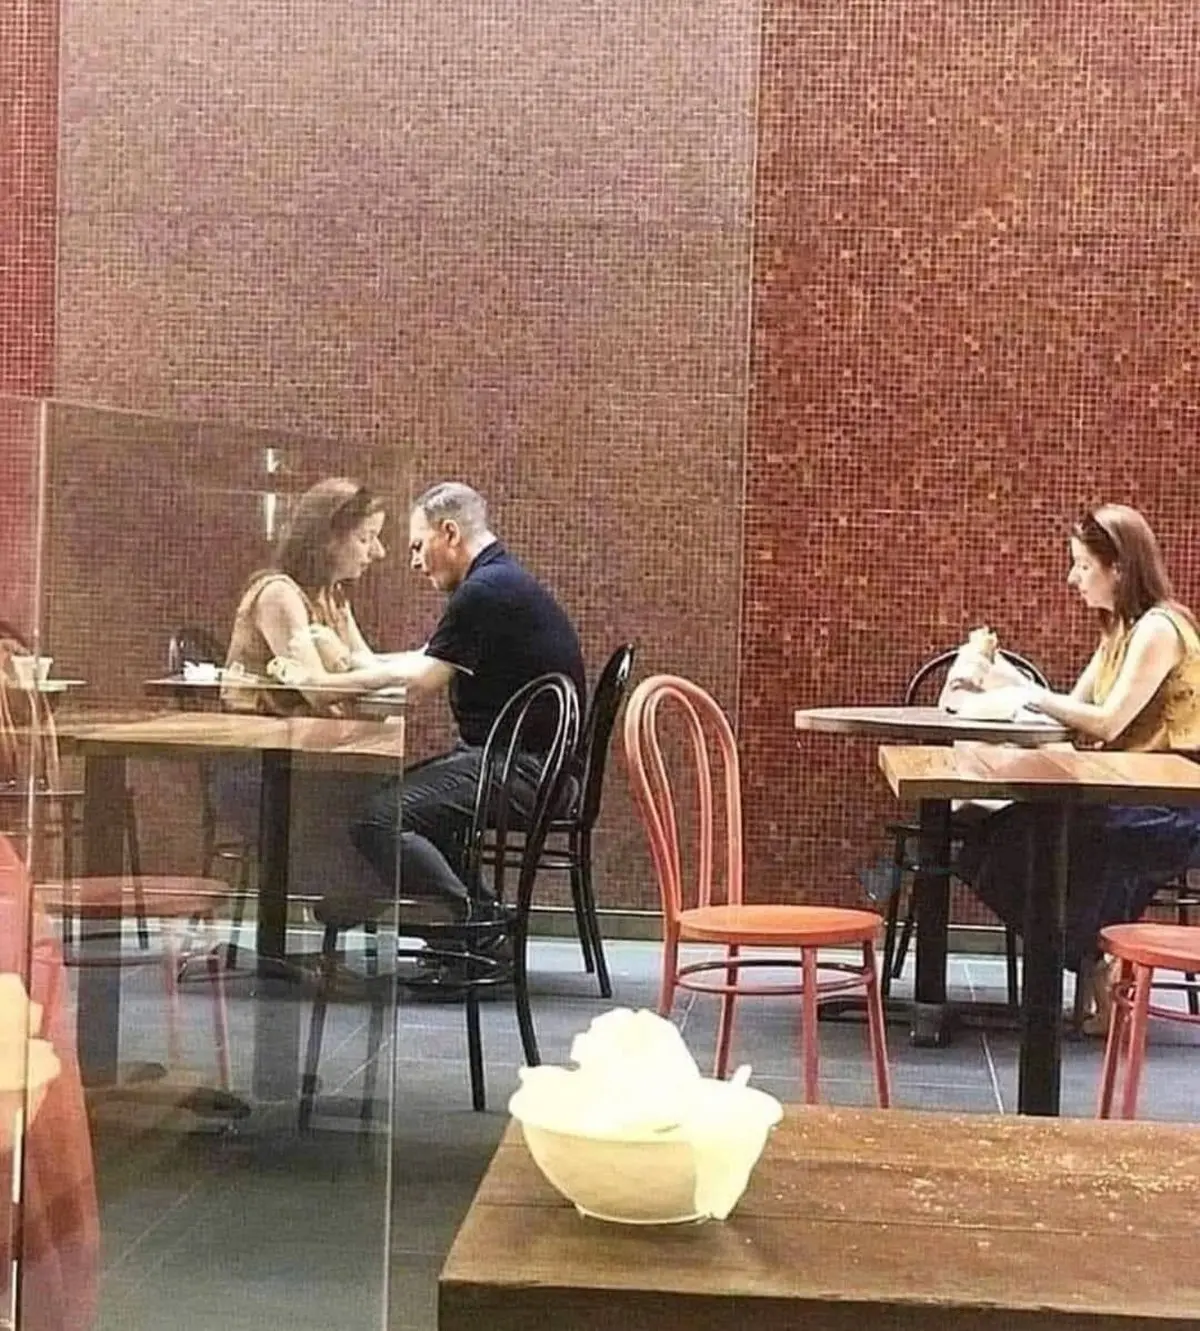 ‏عکسی اتفاقی از دو فرد تنها در کافه 